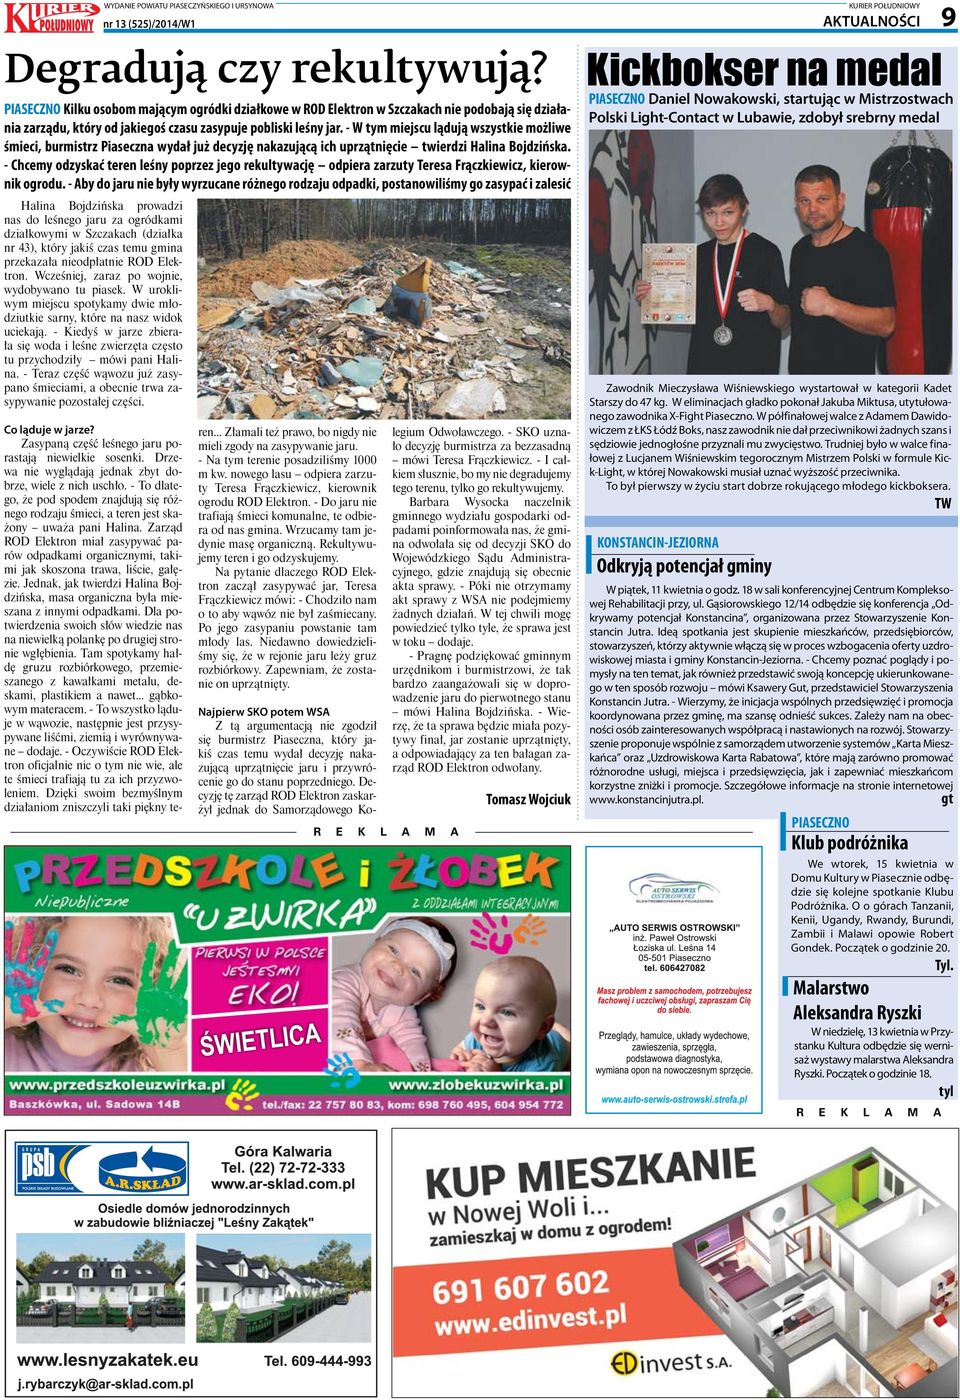 - W tym miejscu lądują wszystkie możliwe śmieci, burmistrz Piaseczna wydał już decyzję nakazującą ich uprzątnięcie twierdzi Halina Bojdzińska.